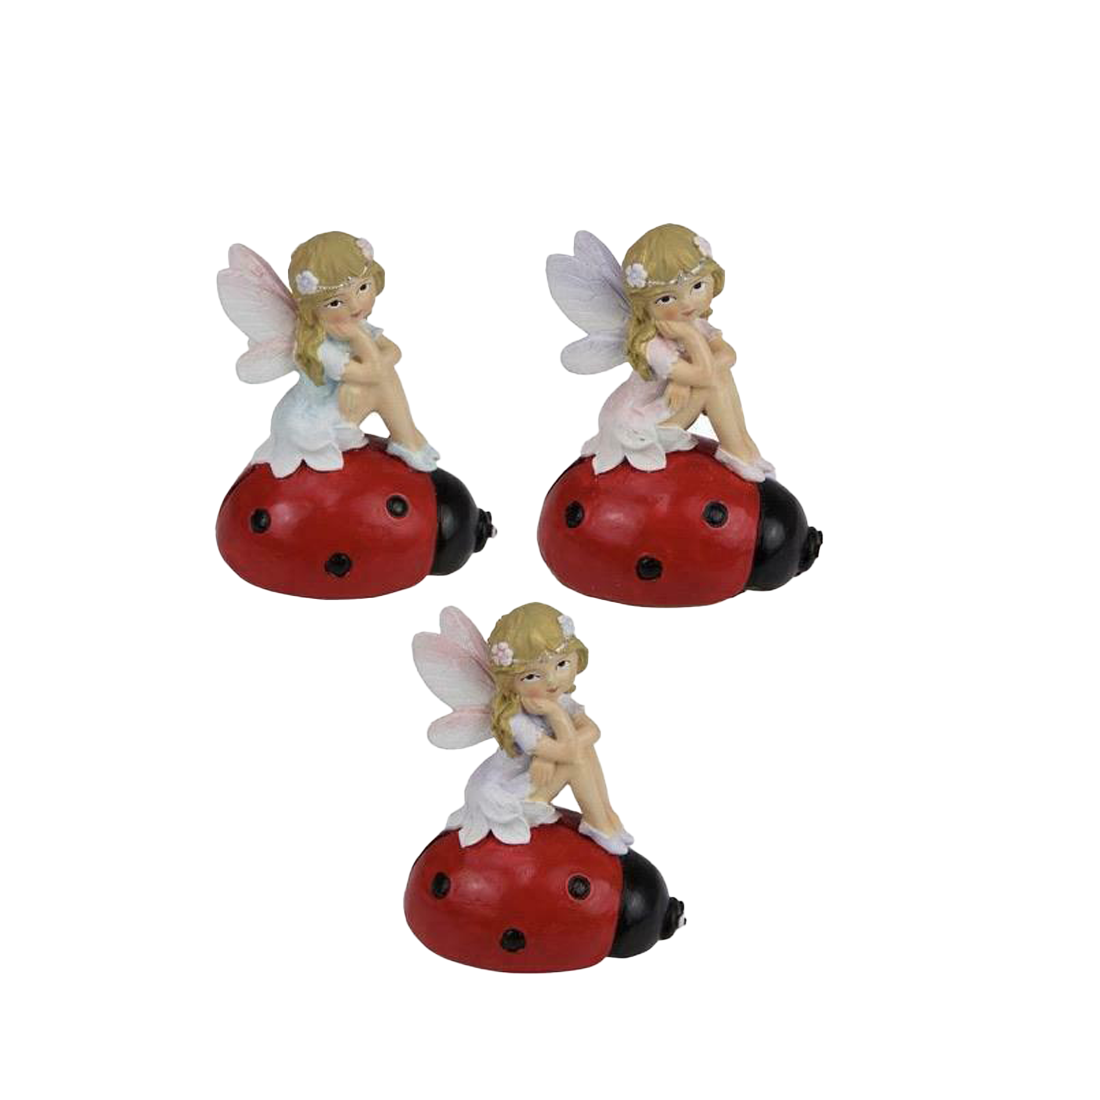 Fairy Sitting on Ladybug Figurine